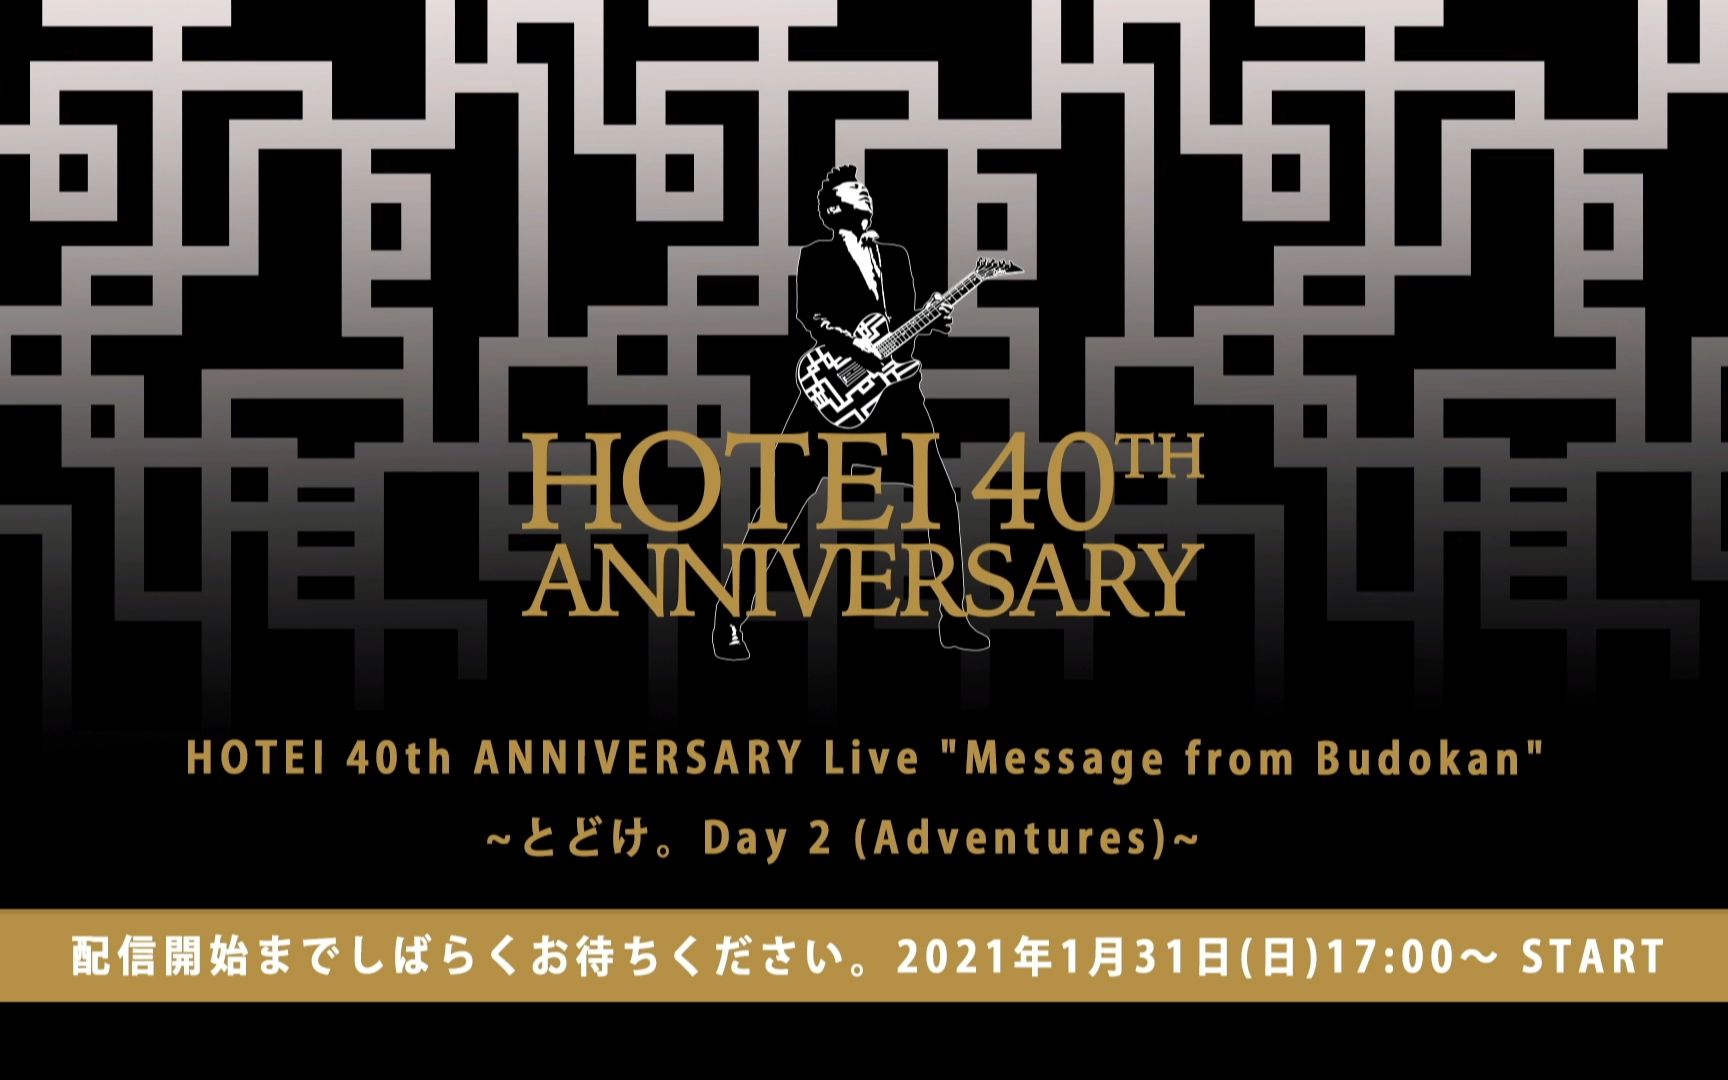 布袋寅泰「HOTEI 40th ANNIVERSARY Live “Message from Budokan”」Day2 